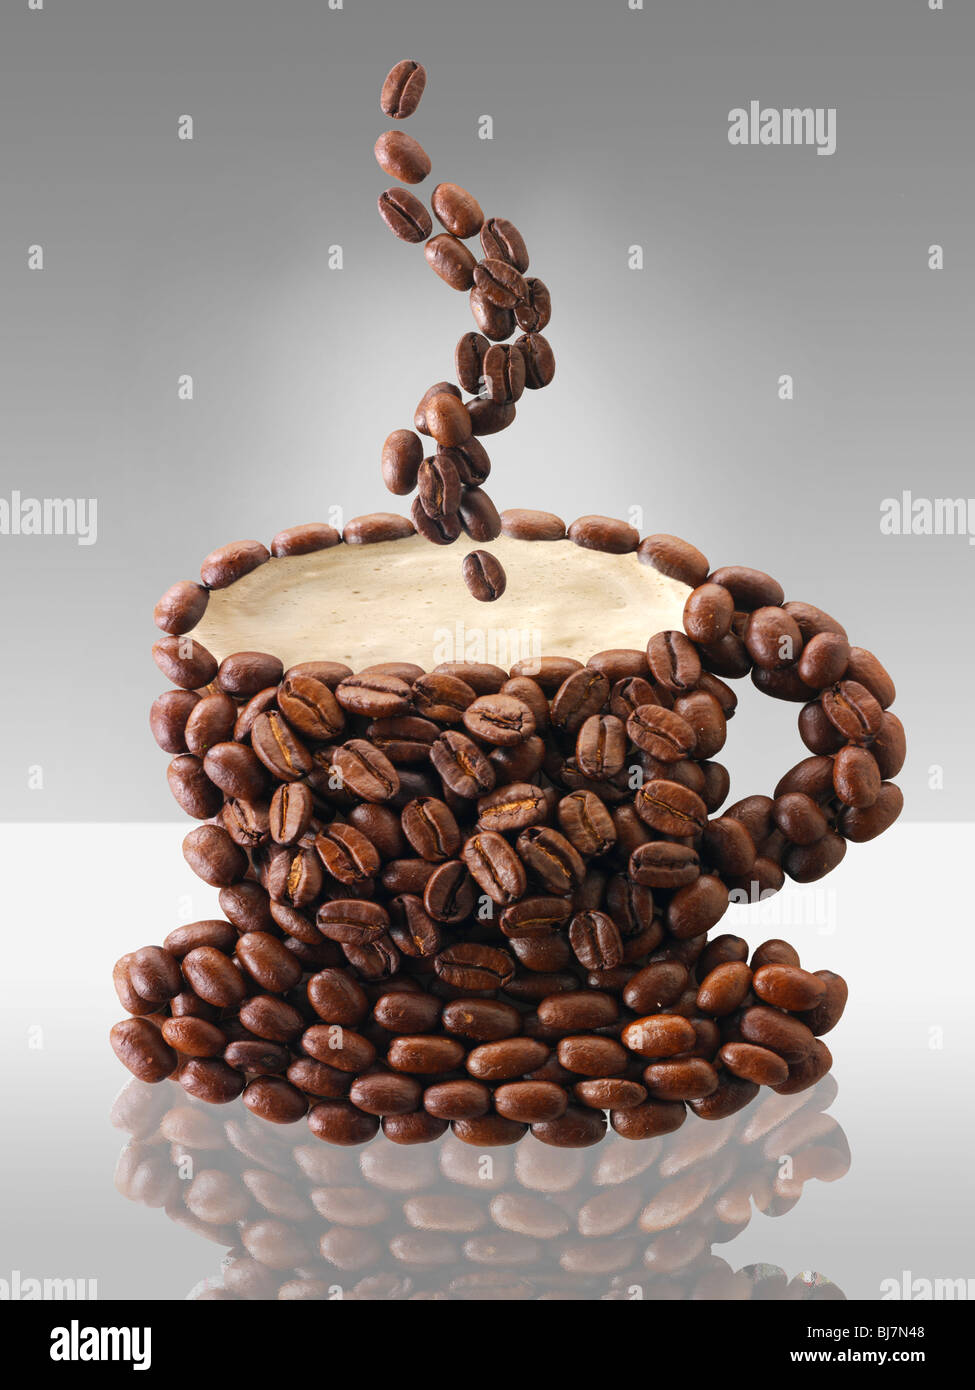 Los granos de café en la forma de una taza de café. Stock Photo Foto de stock